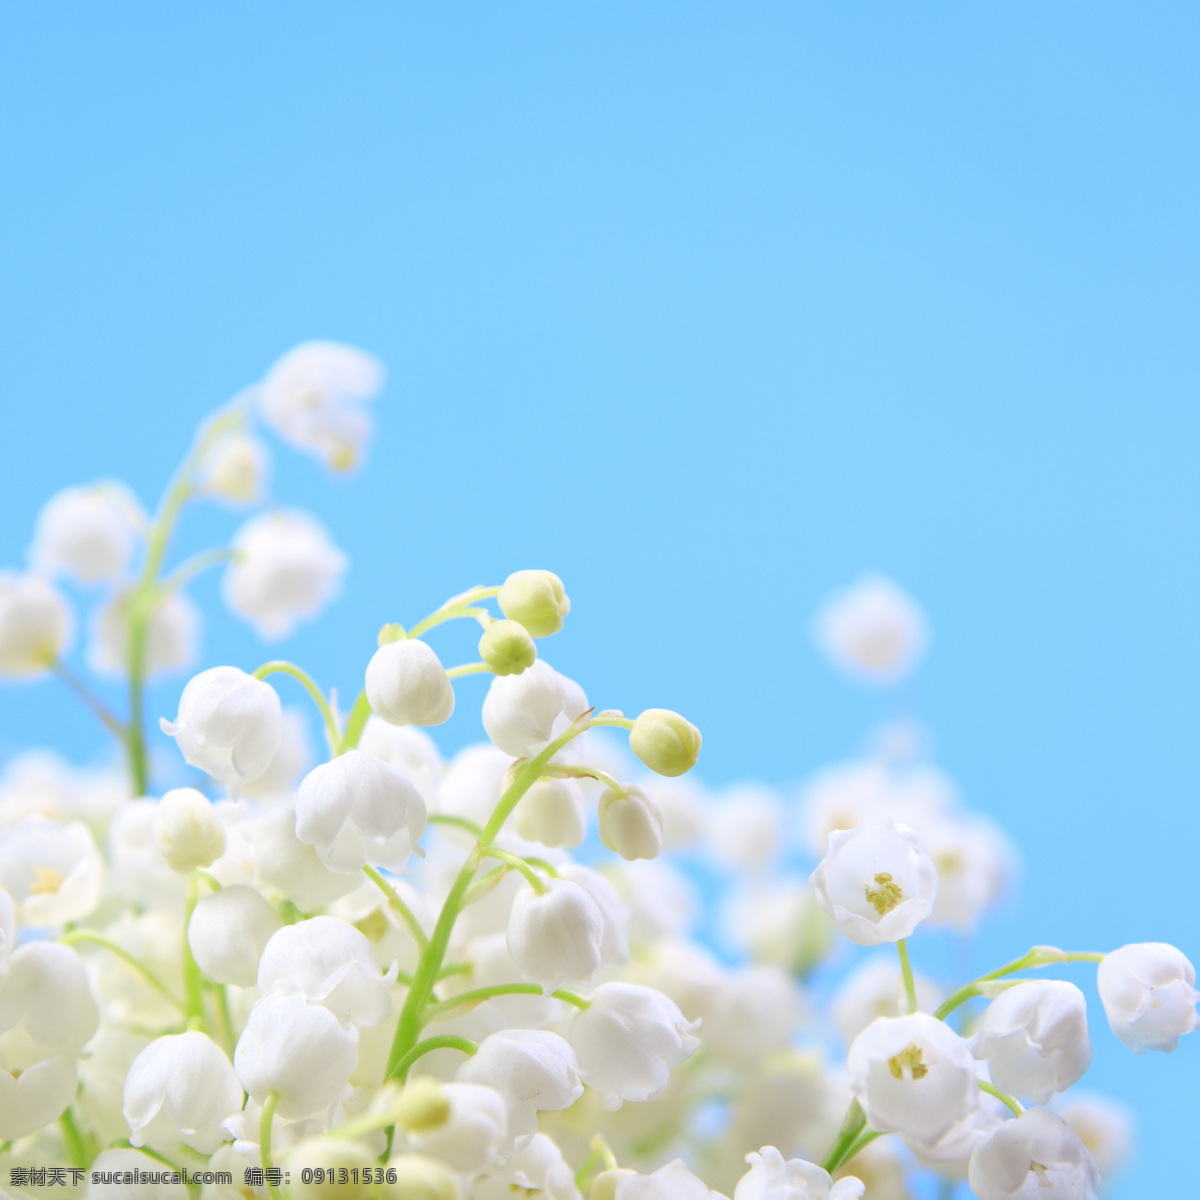 雪花 莲花 朵 雪花莲 白色小花 美丽花卉植物 美丽花朵 鲜花背景 花草树木 生物世界